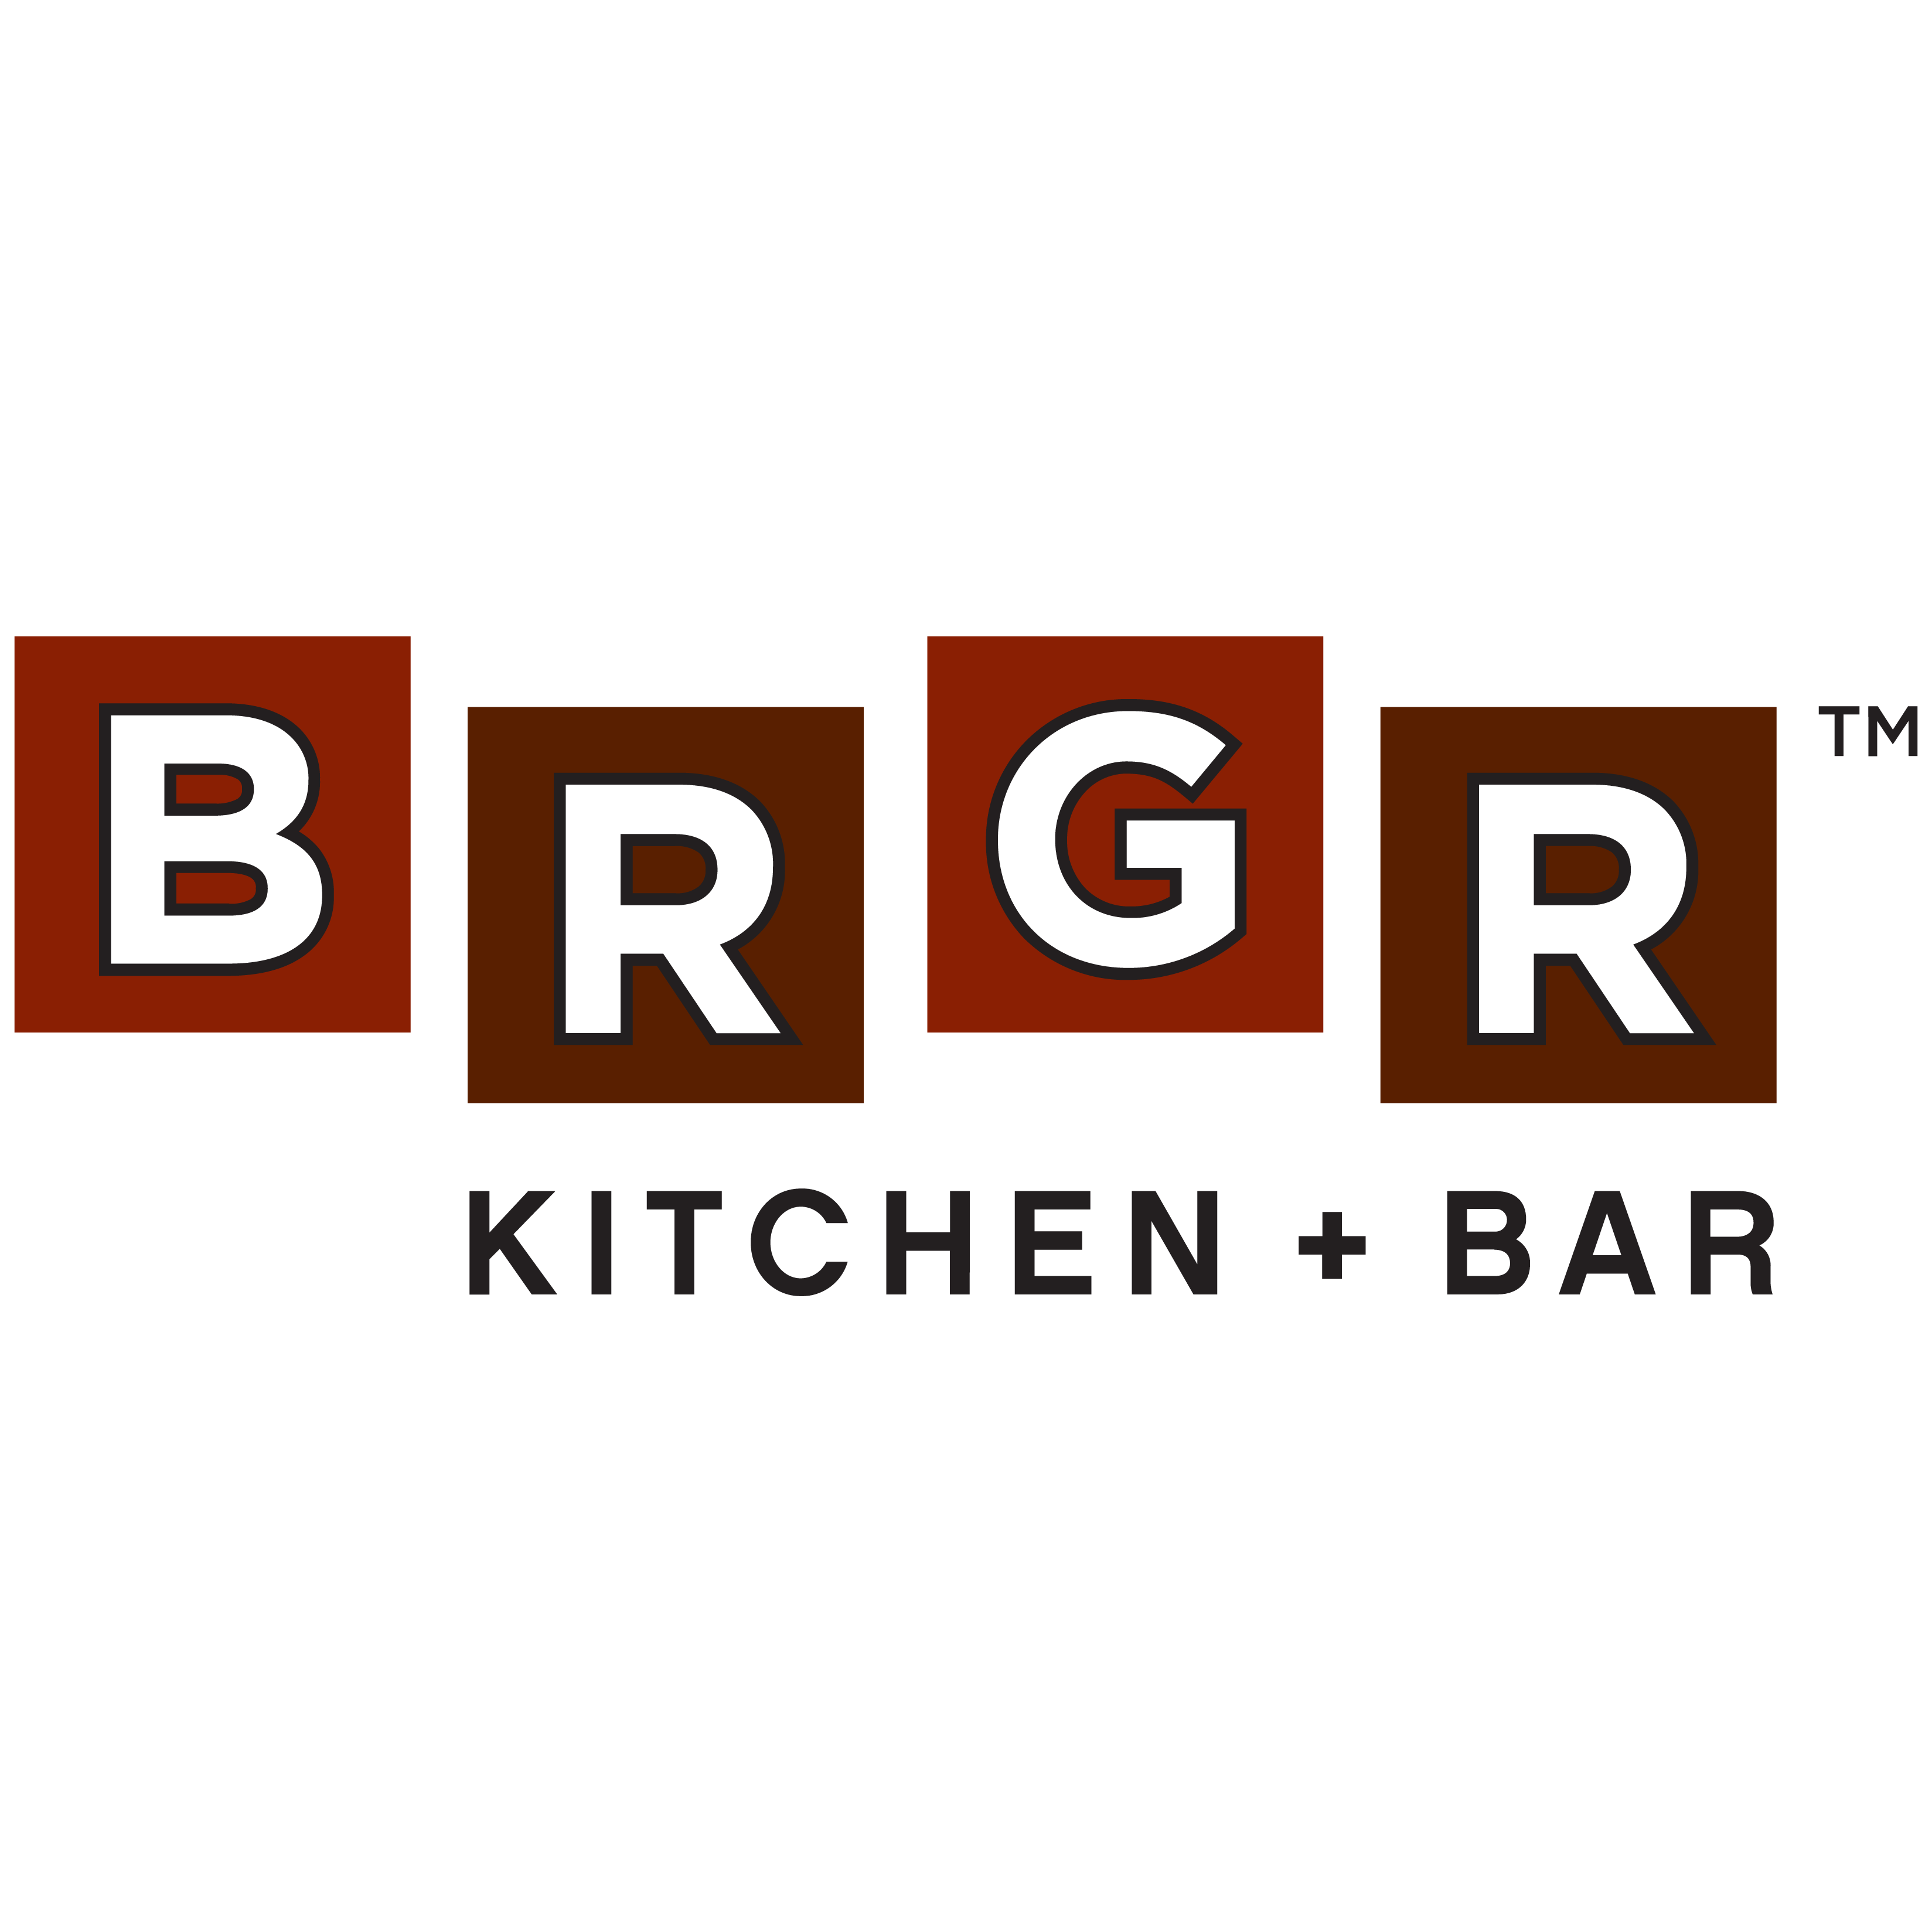 brgr kitchen + bar